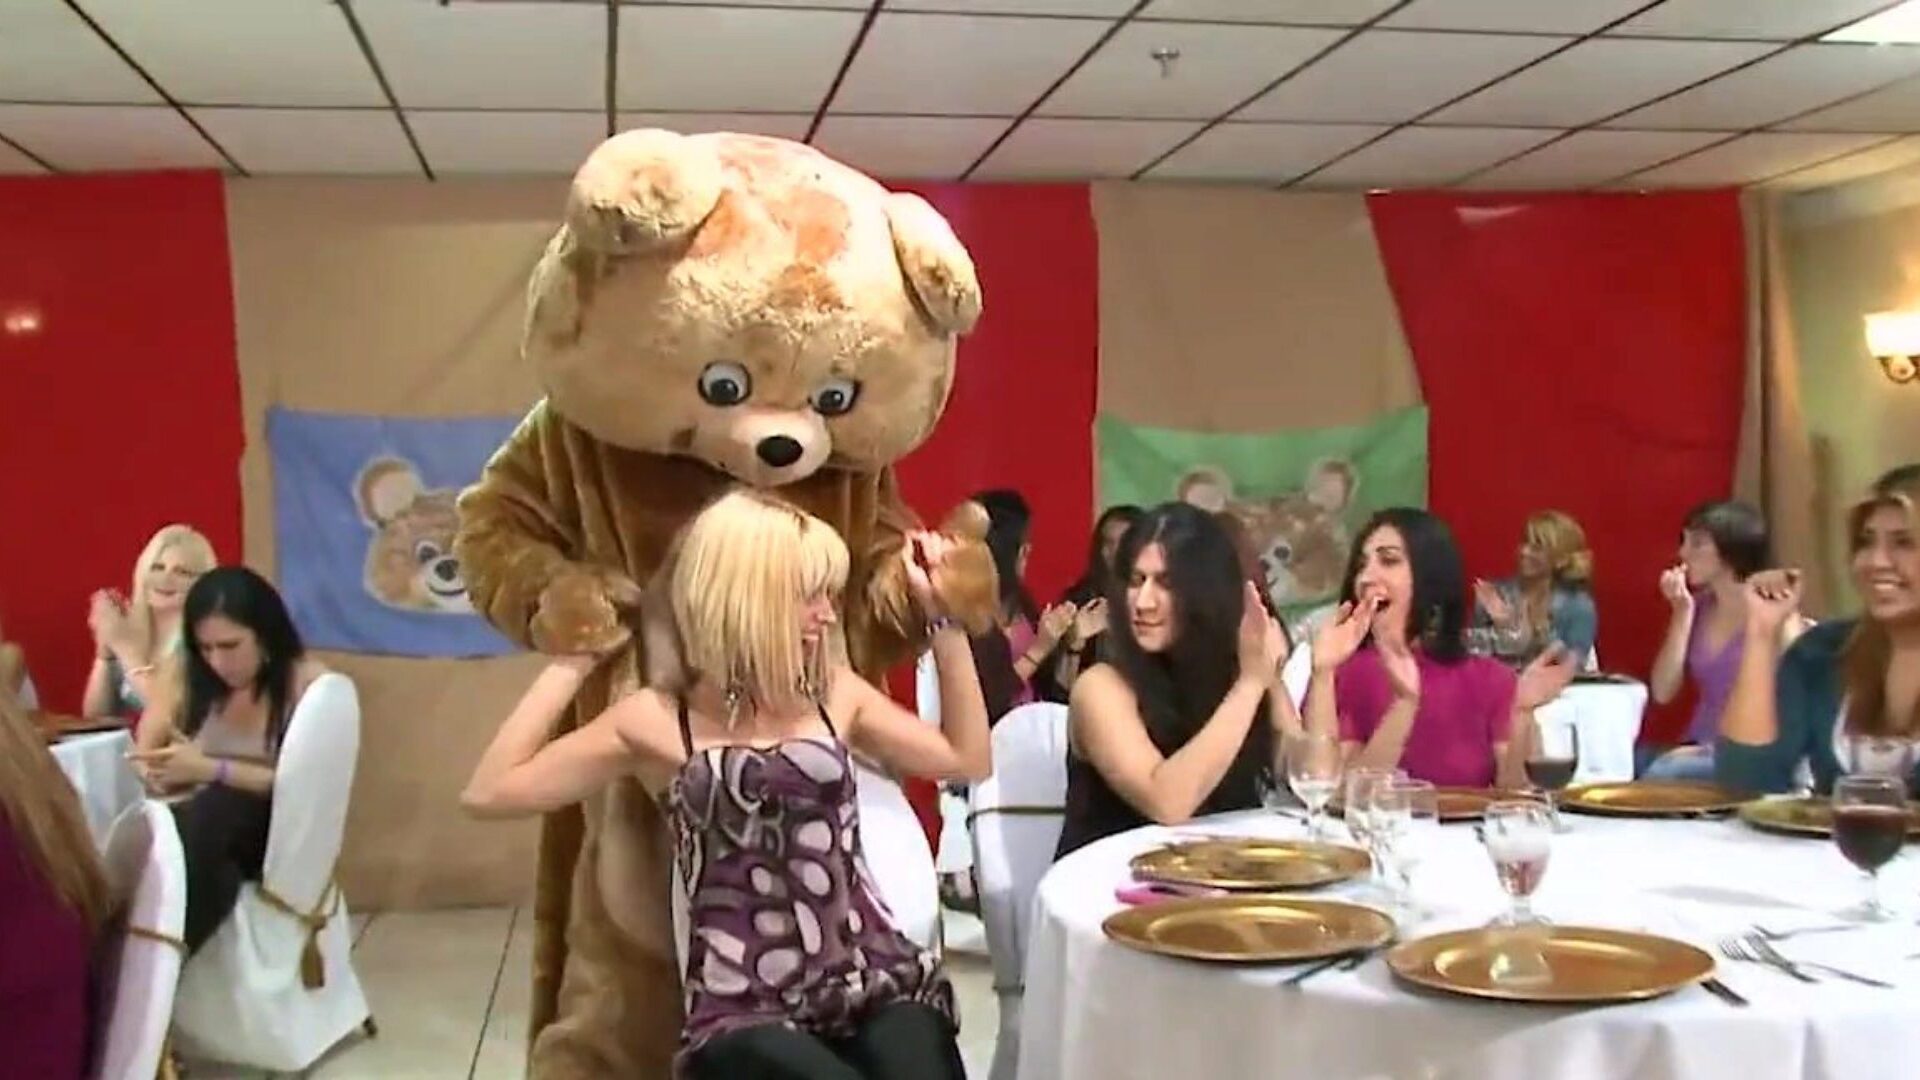 dansende bjørn - cfnm fest med store pik mandlige strippere og liderlige piger